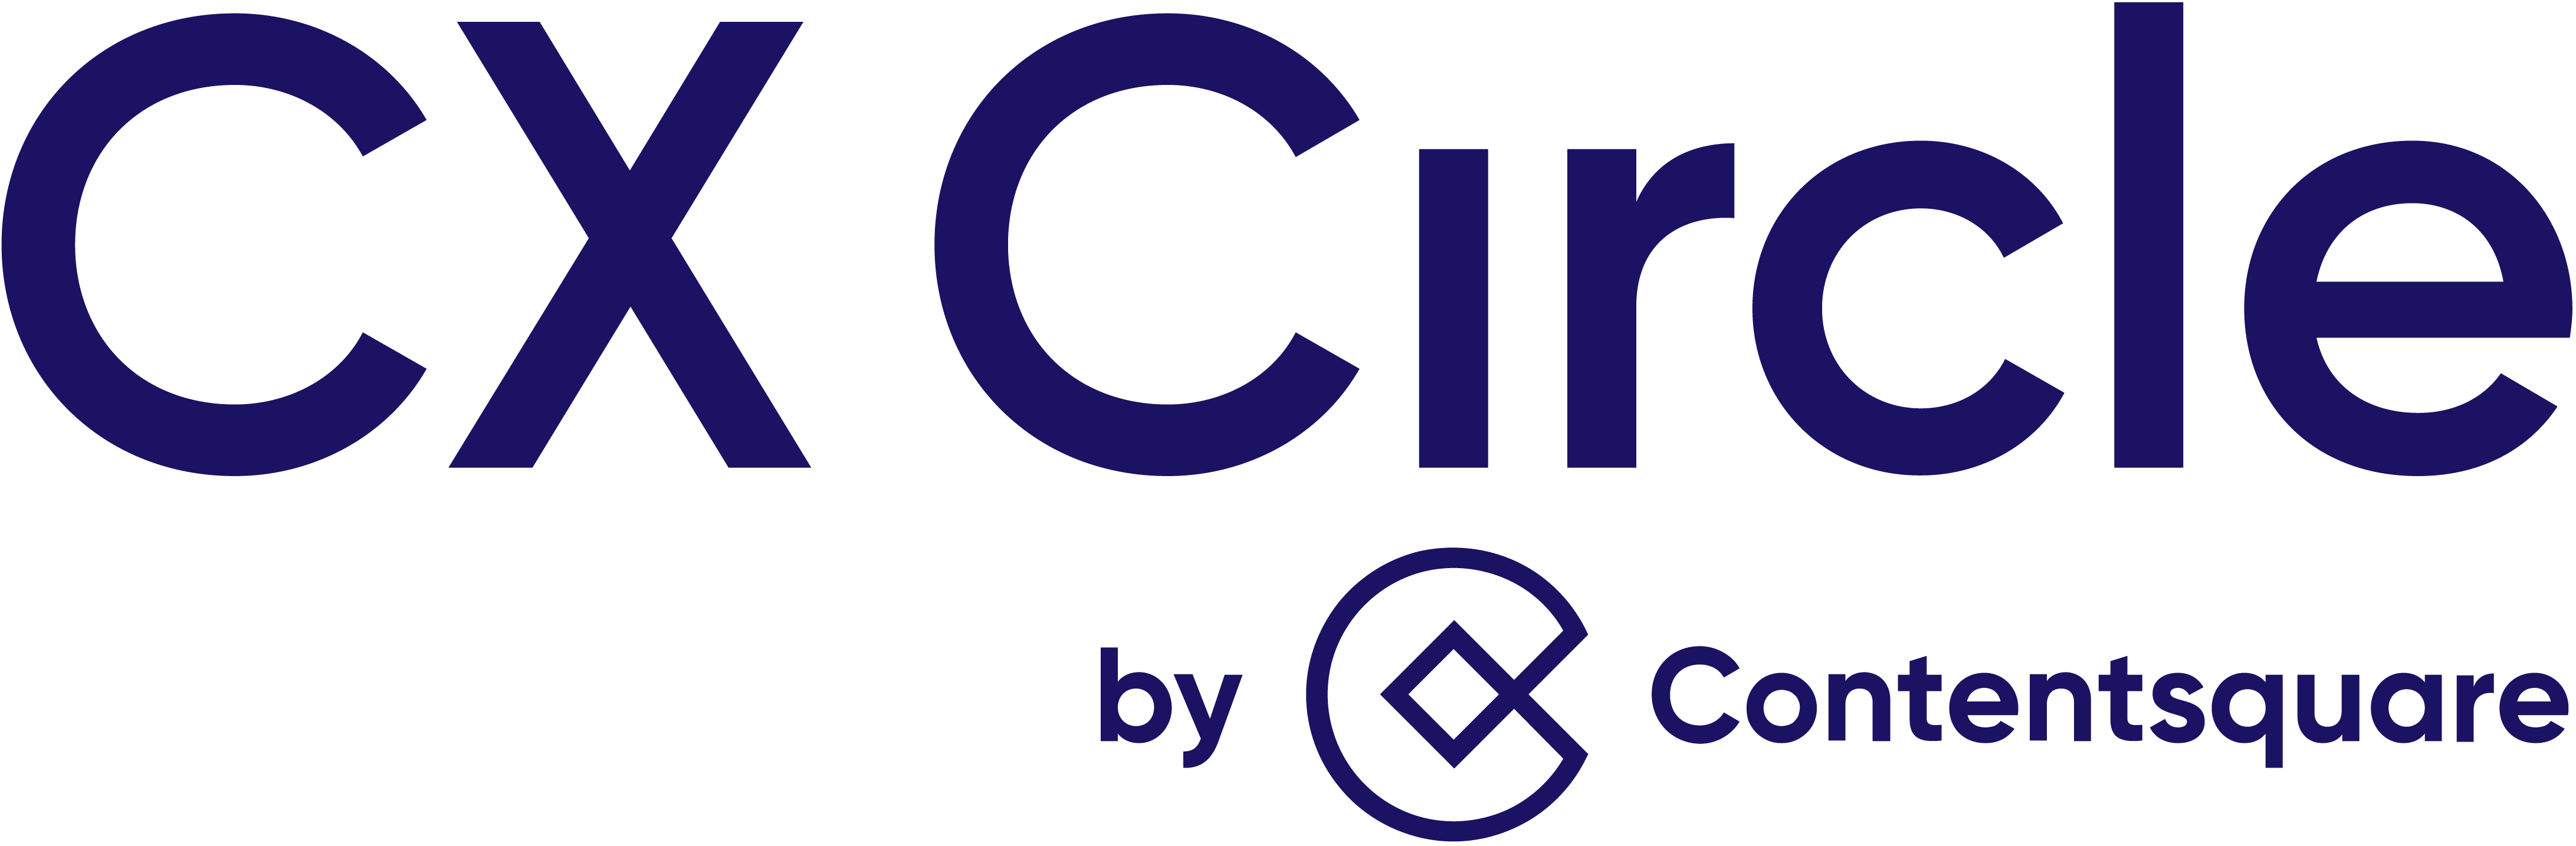 CX Circle-logo